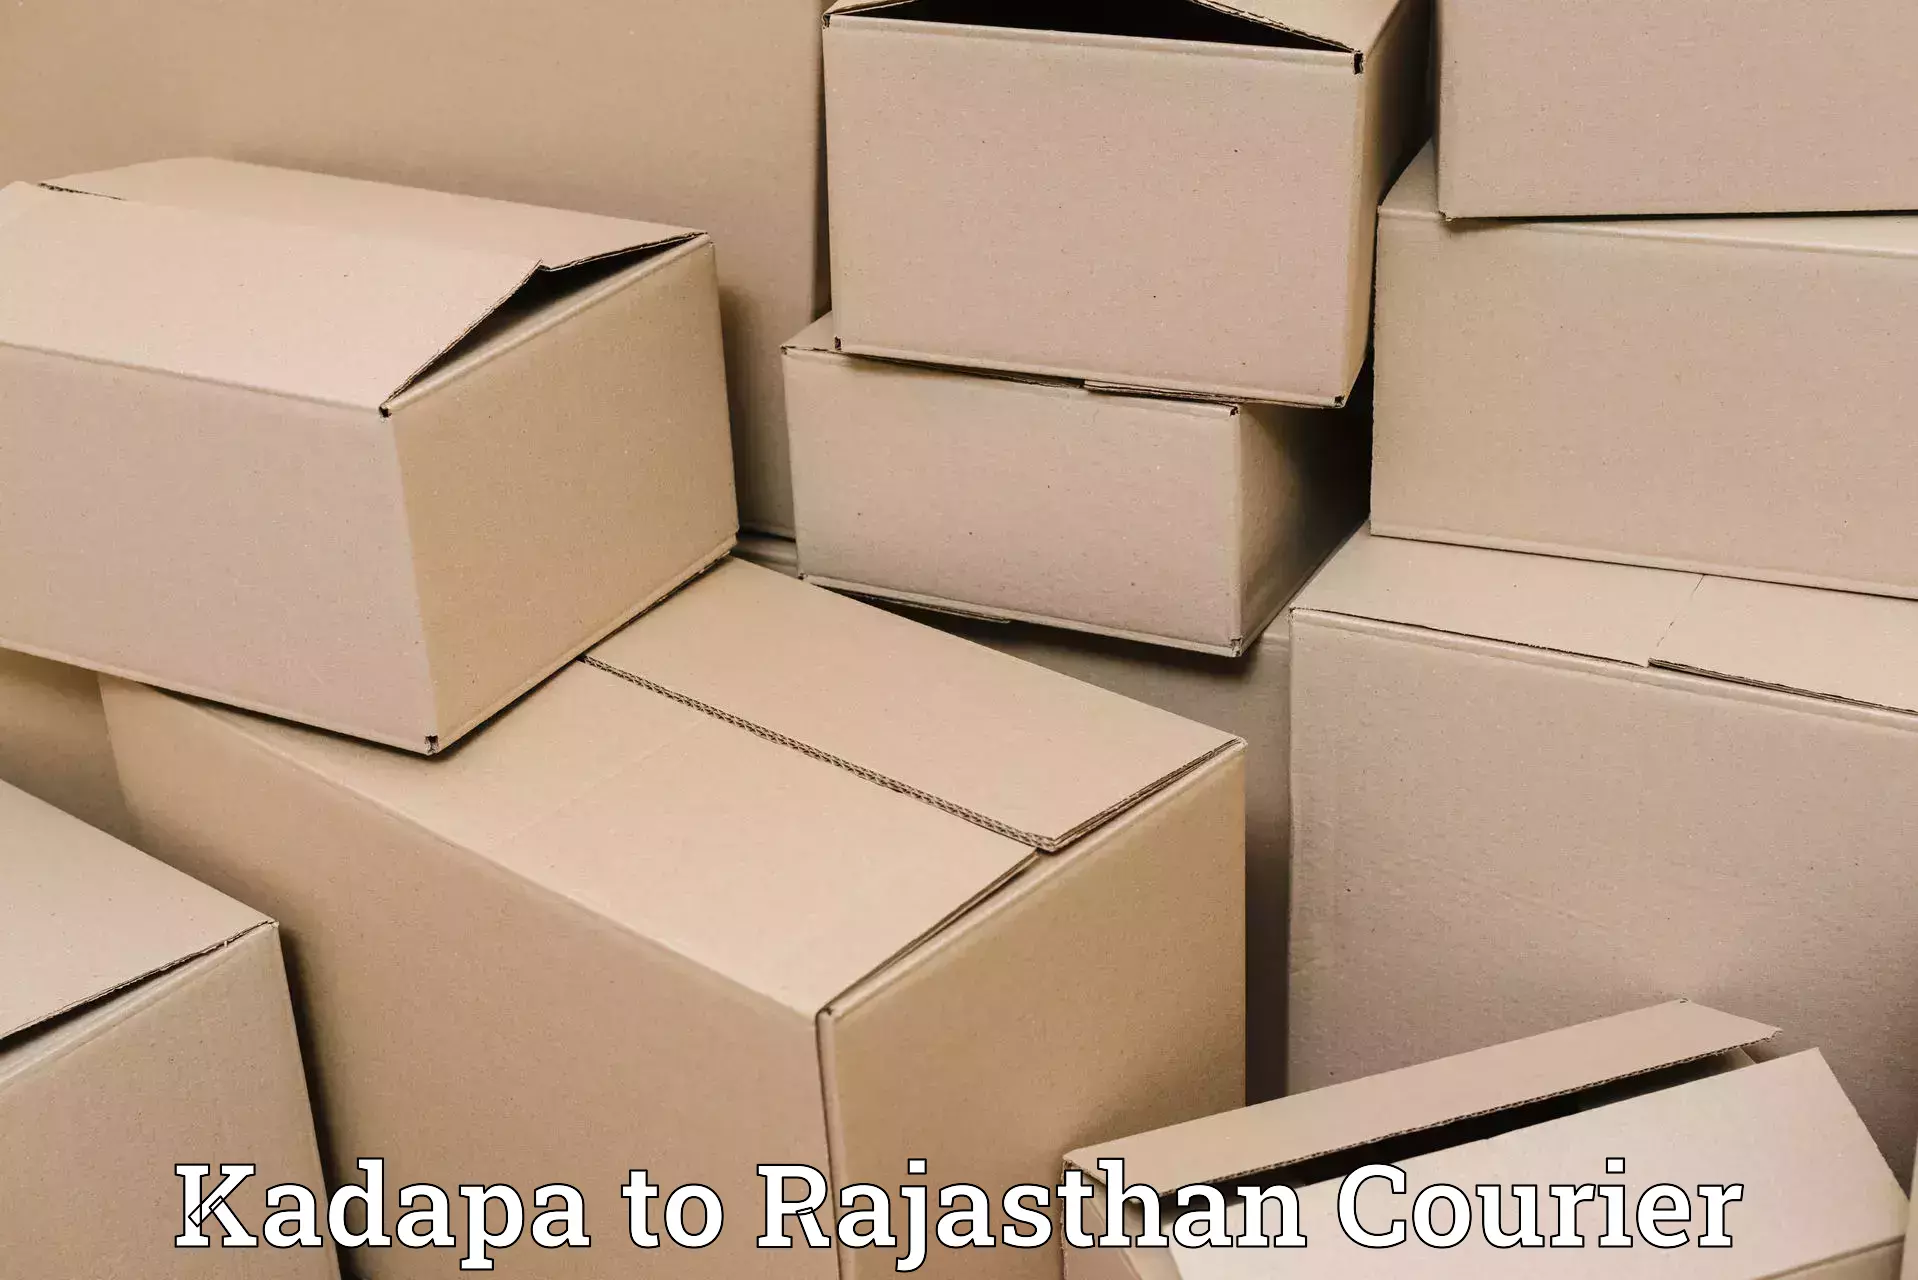 Affordable parcel service Kadapa to Nainwa